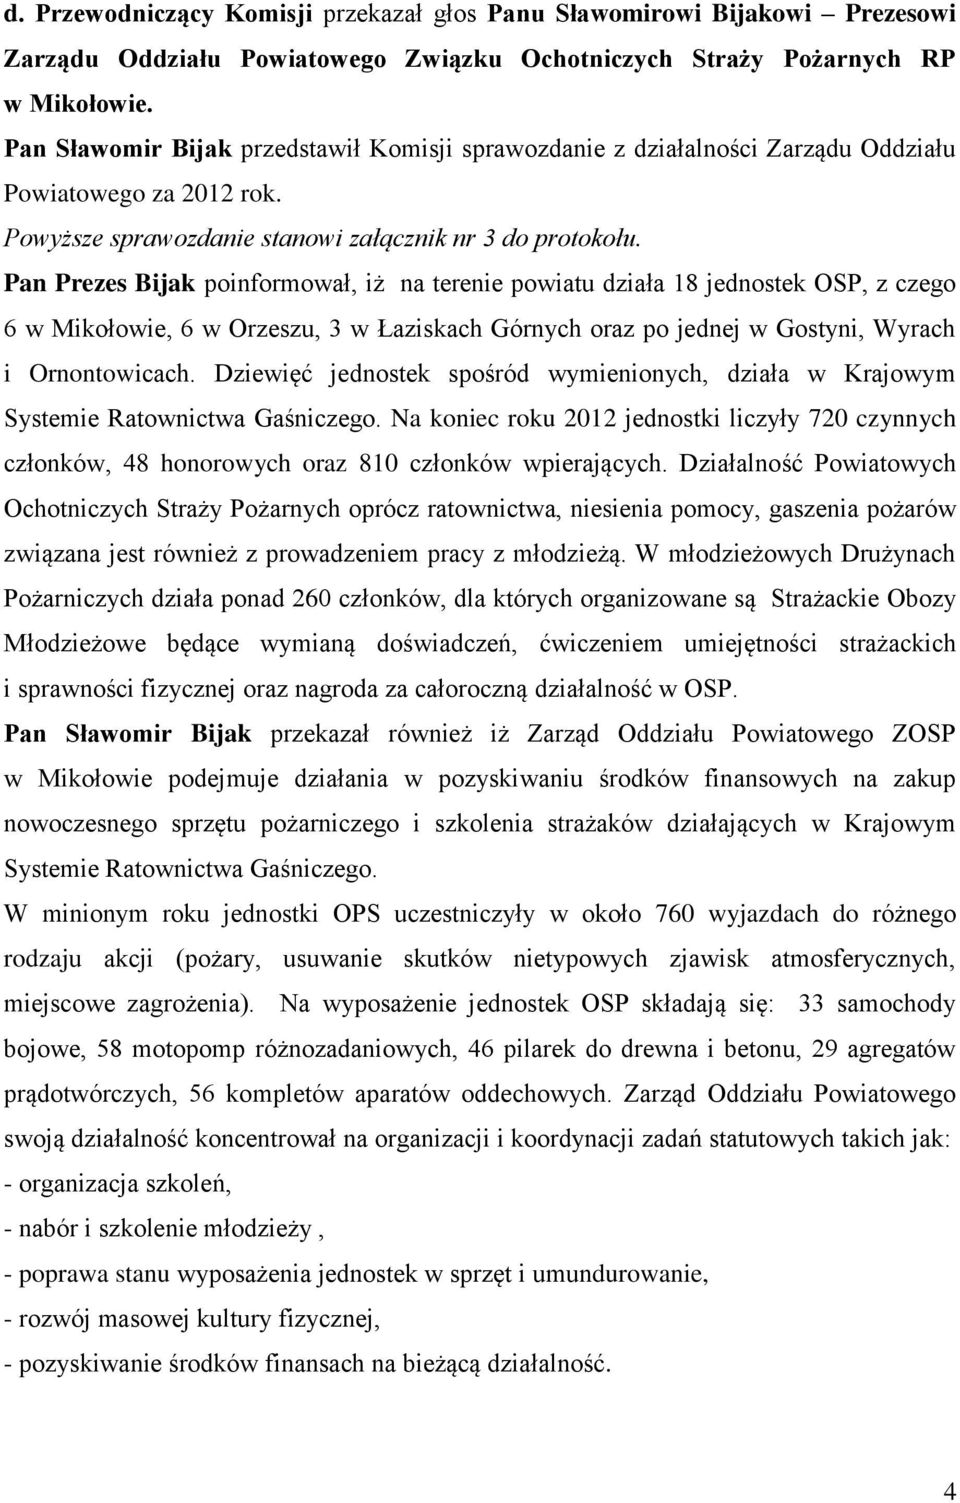 Pan Prezes Bijak poinformował, iż na terenie powiatu działa 18 jednostek OSP, z czego 6 w Mikołowie, 6 w Orzeszu, 3 w Łaziskach Górnych oraz po jednej w Gostyni, Wyrach i Ornontowicach.